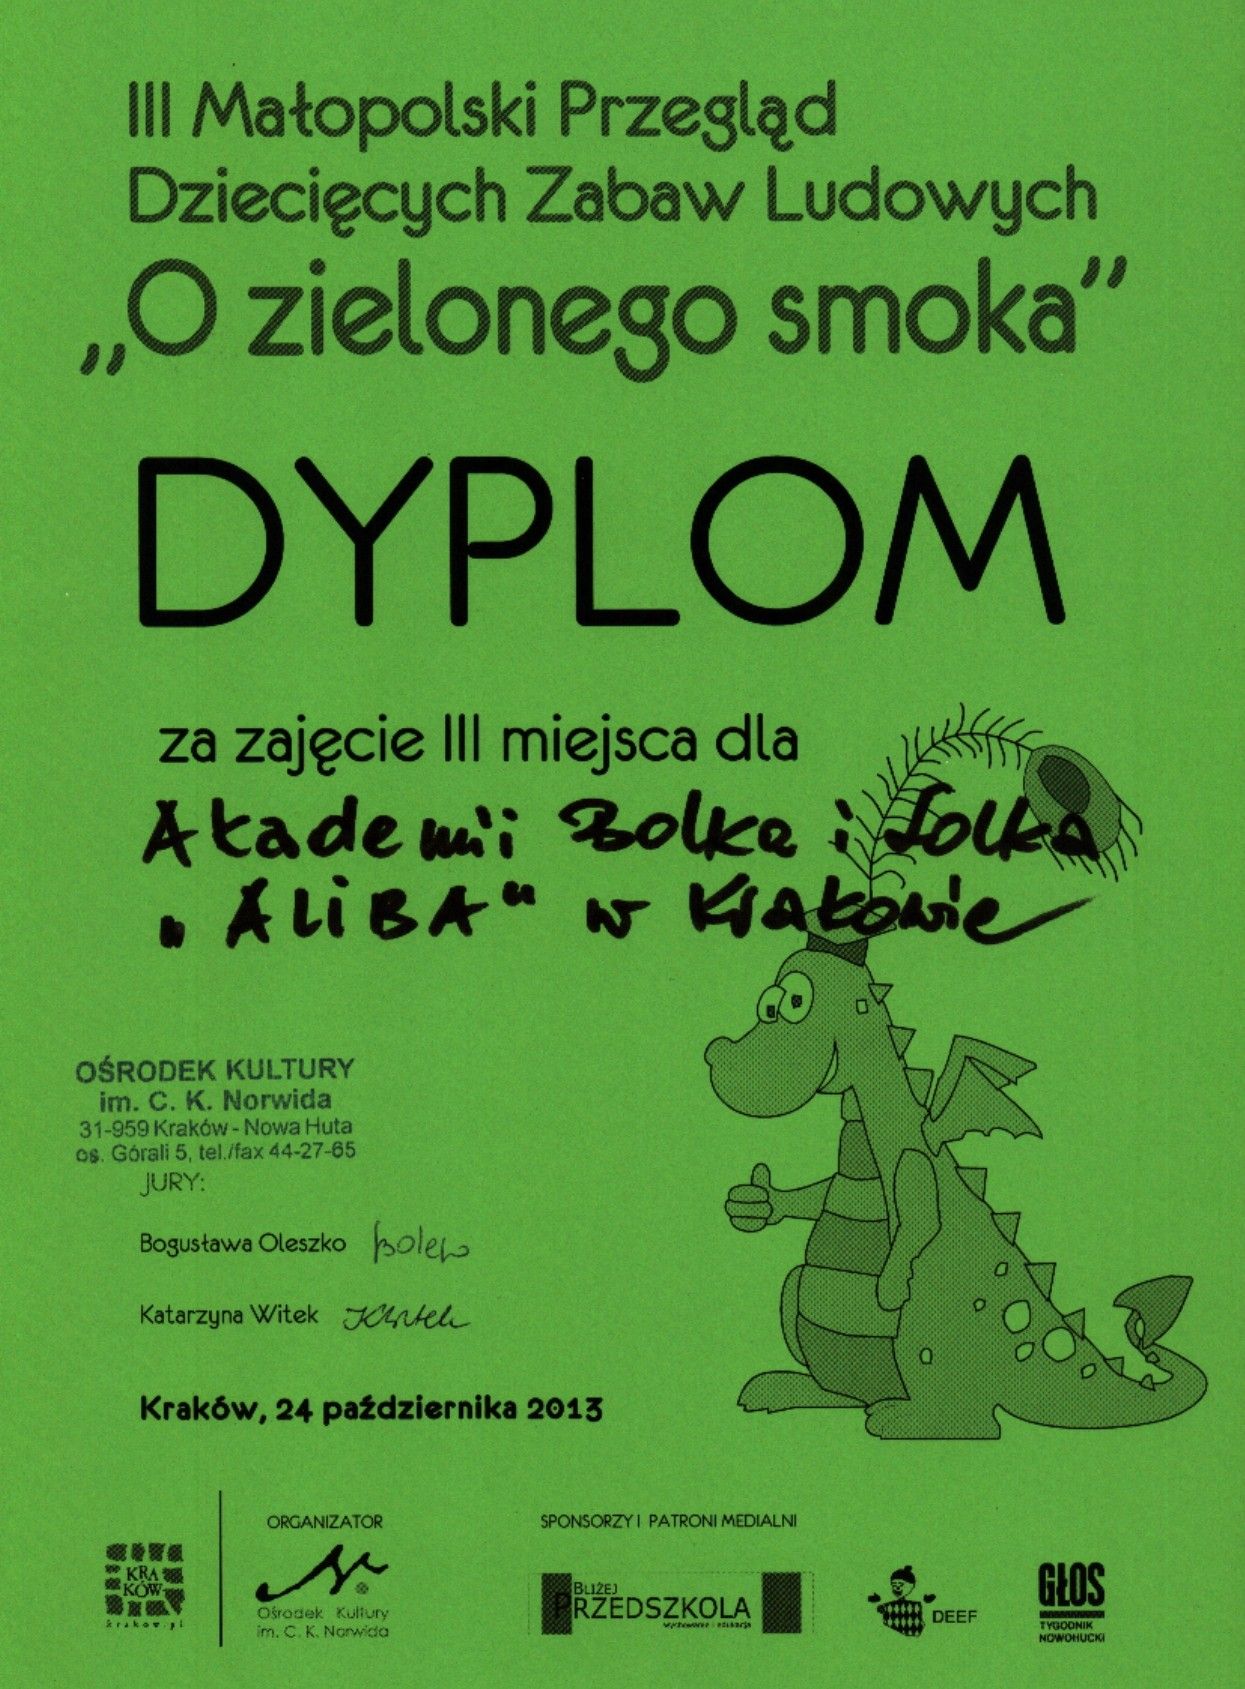 III Małopolski Przegląd Dziecięcych Zabaw Ludowych 2013